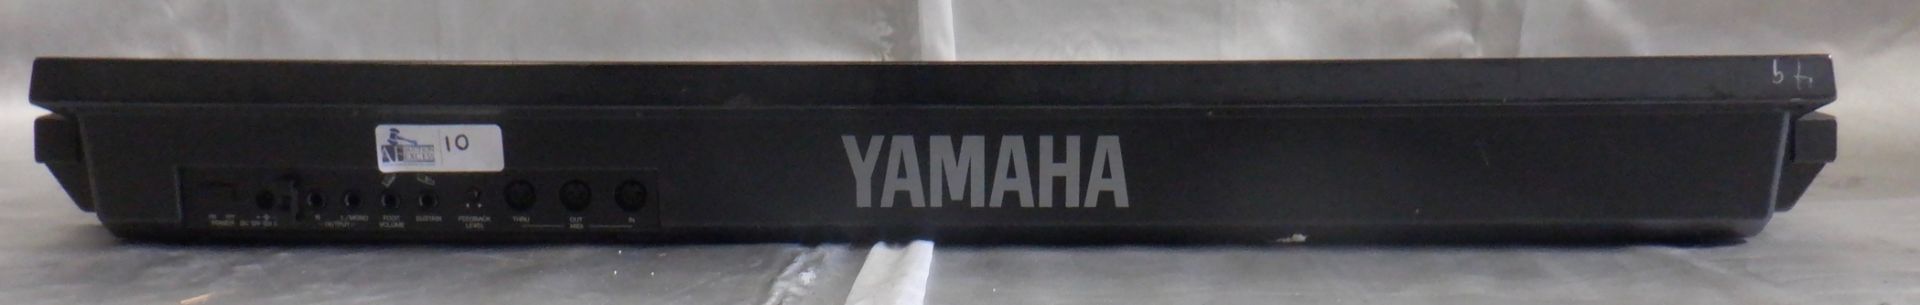 YAMAHA DS55 KEYBOARD - Image 4 of 5